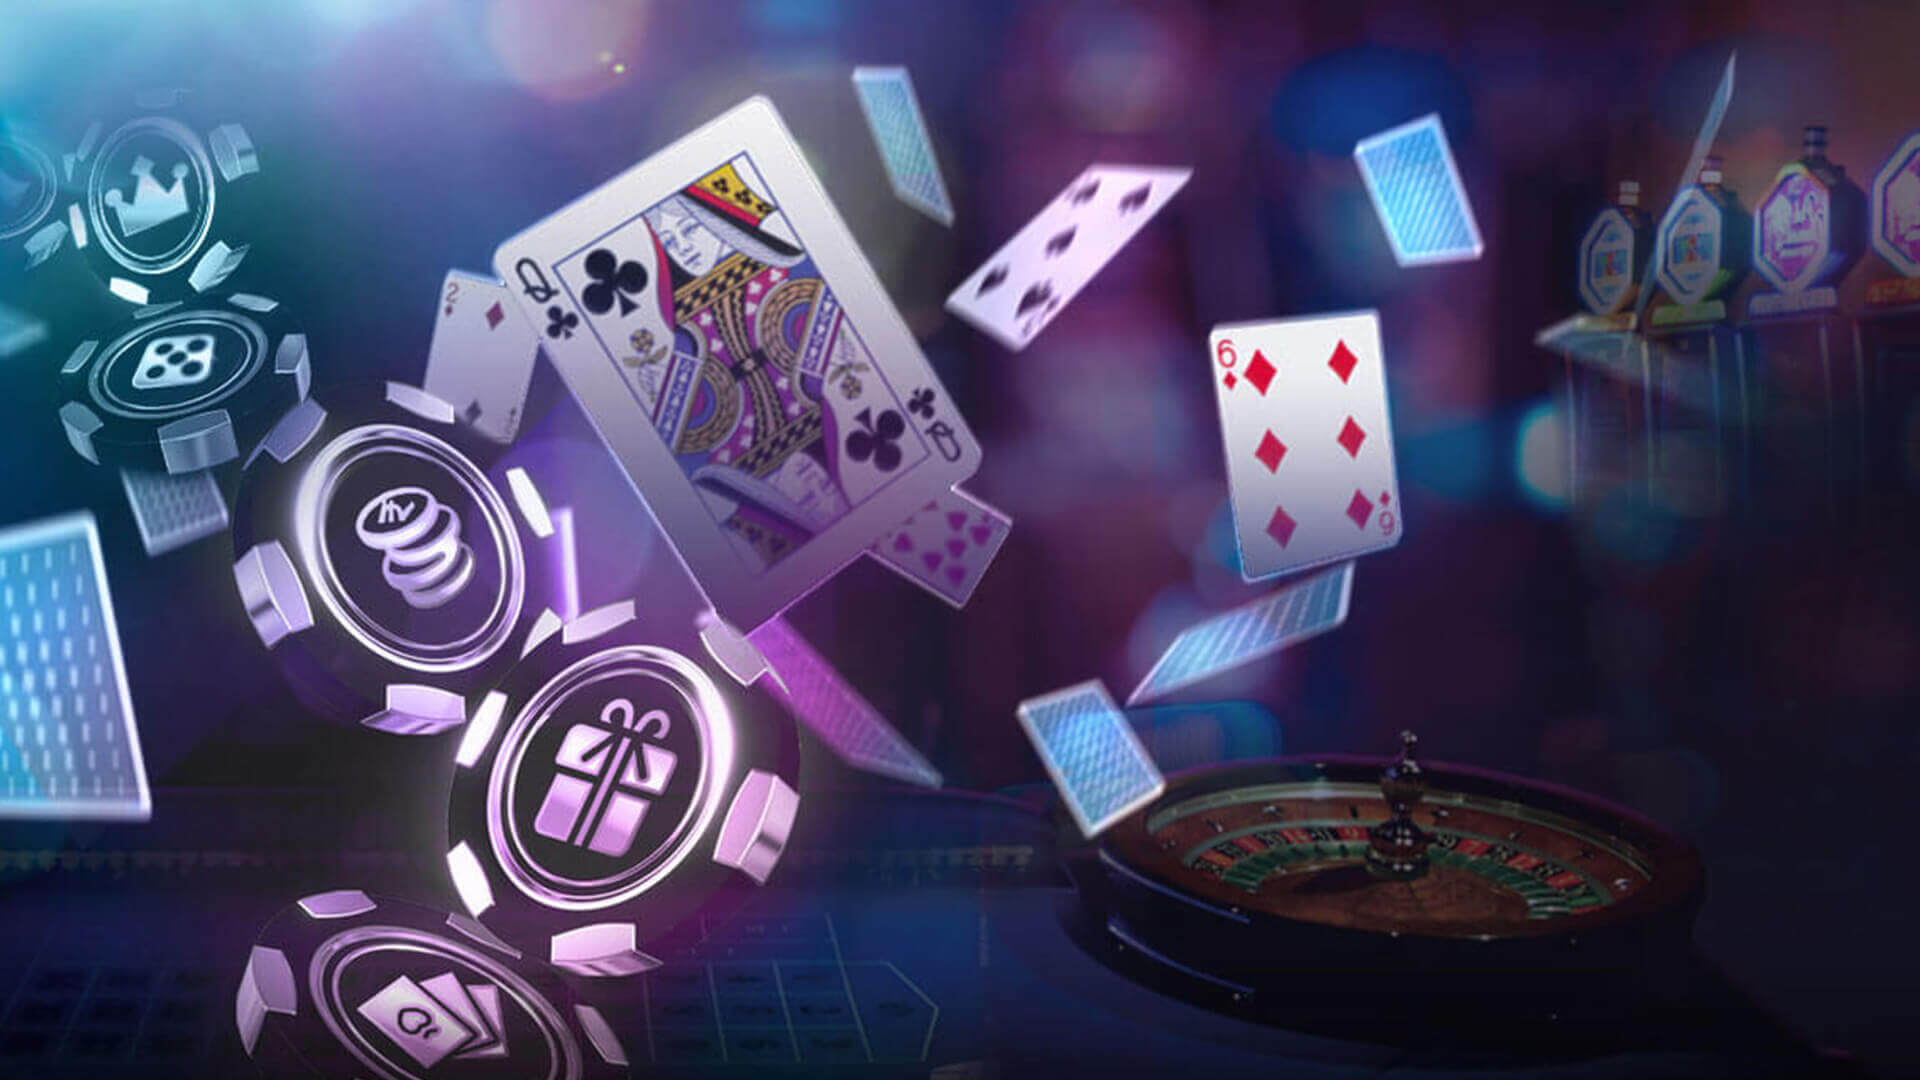 Bandar Judi Online affords the new spheres gambling online